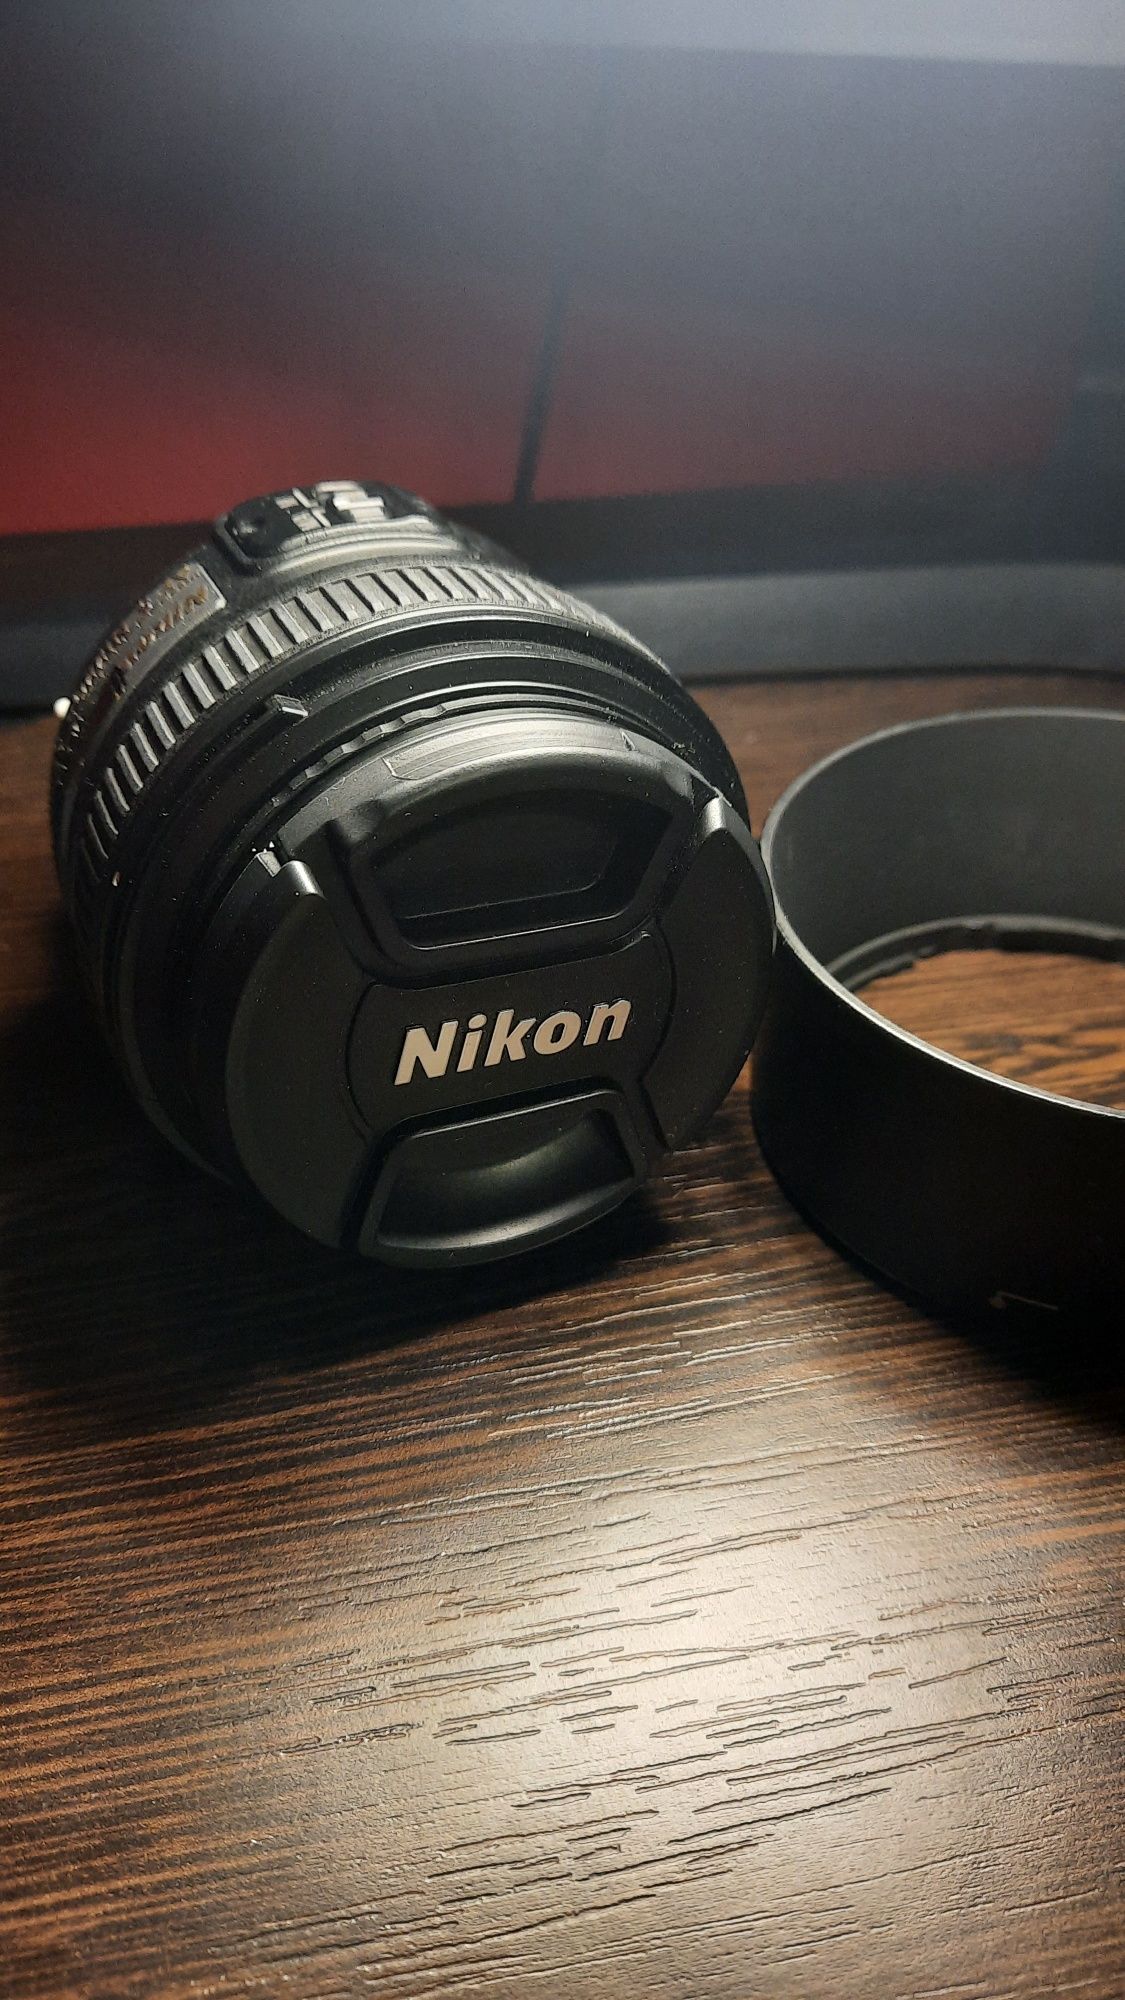 Obiektyw nikkor 50mm 1.8g pełna klatka jak nowy